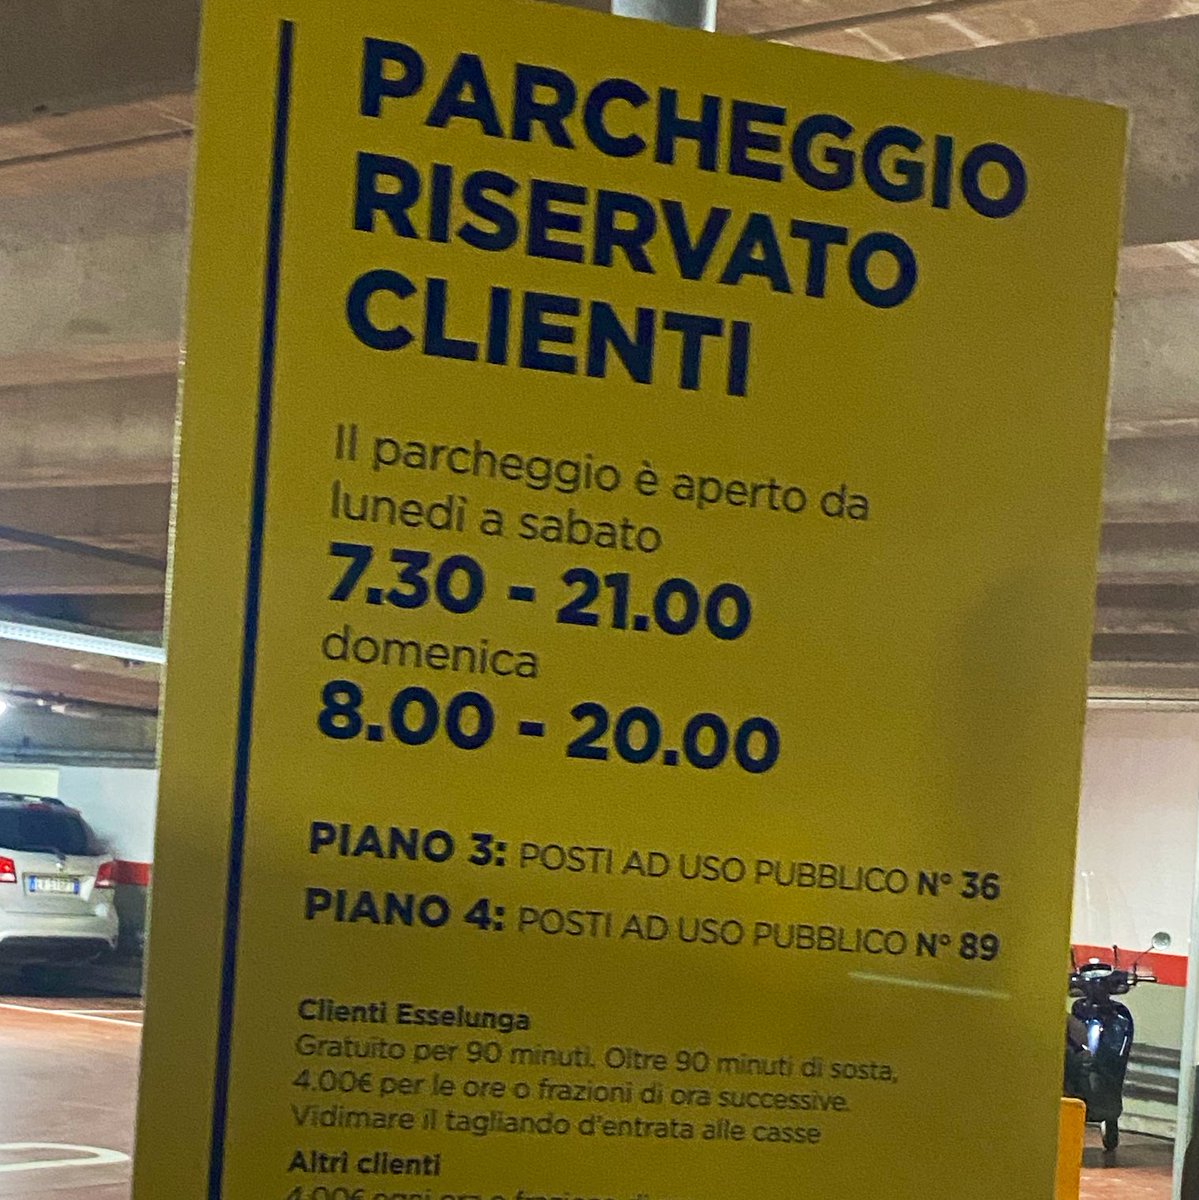 Mi domando, @ComuneMI … se Esselunga dichiara parcheggi ad uso pubblico (come da antico accordo con il comune)… perché poi li fa pagare??? @Striscia